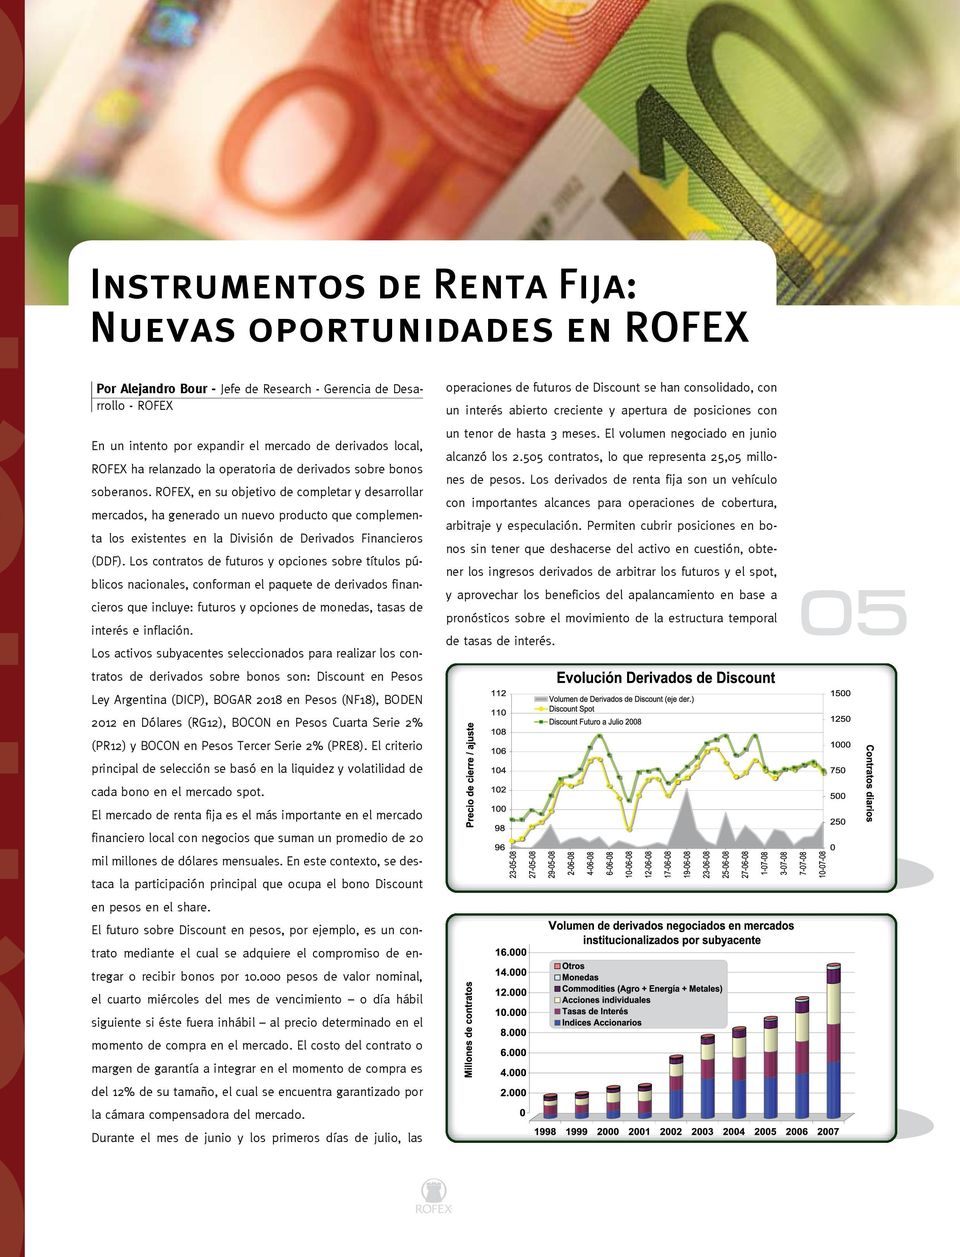 ROFEX, en su objetivo de completar y desarrollar mercados, ha generado un nuevo producto que complementa los existentes en la División de Derivados Financieros (DDF).